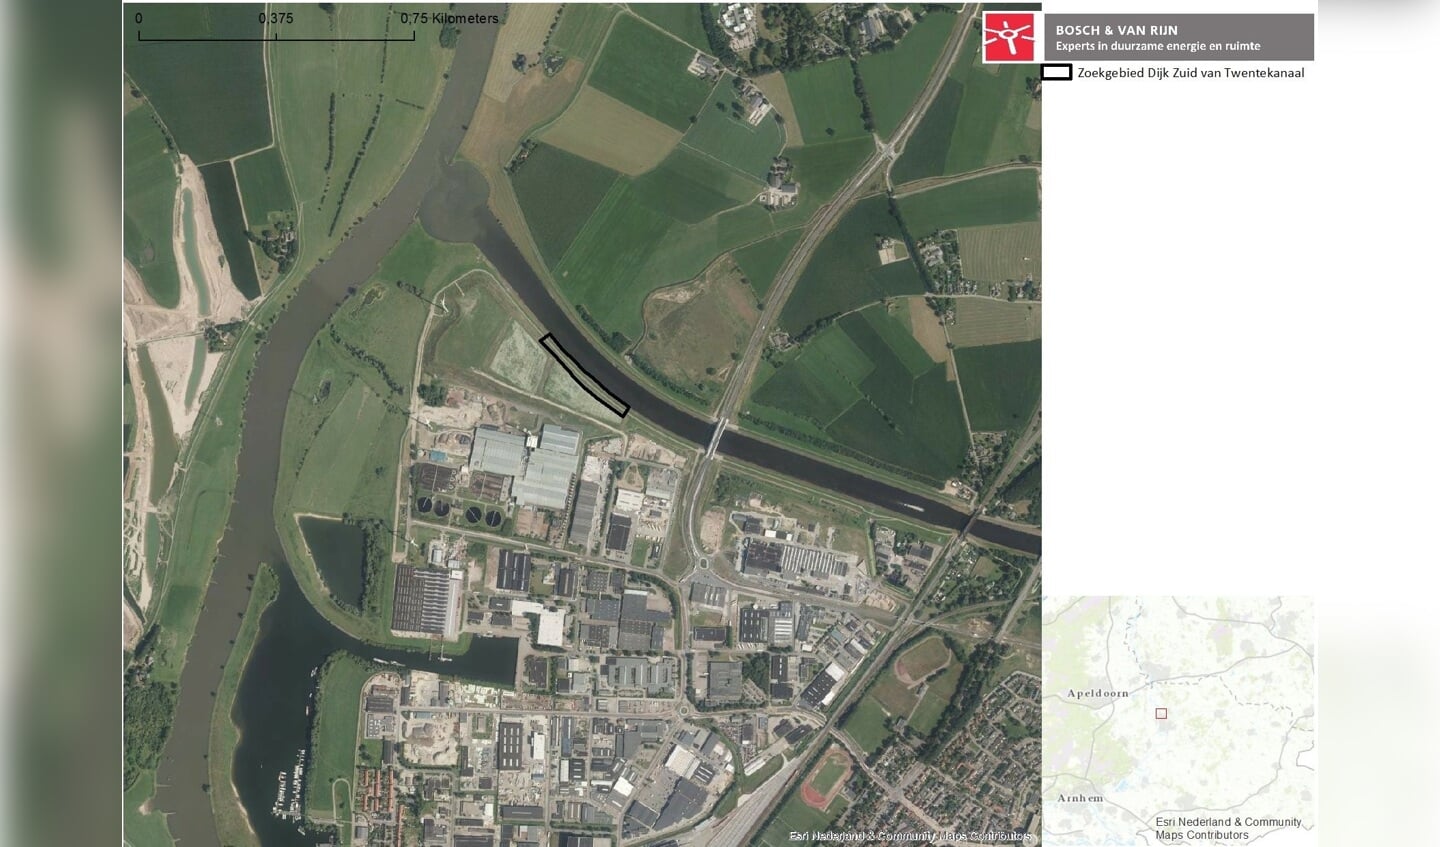 Locatiekaart van windmolens in Zutphen. Bron: Bosch en Van Rijn